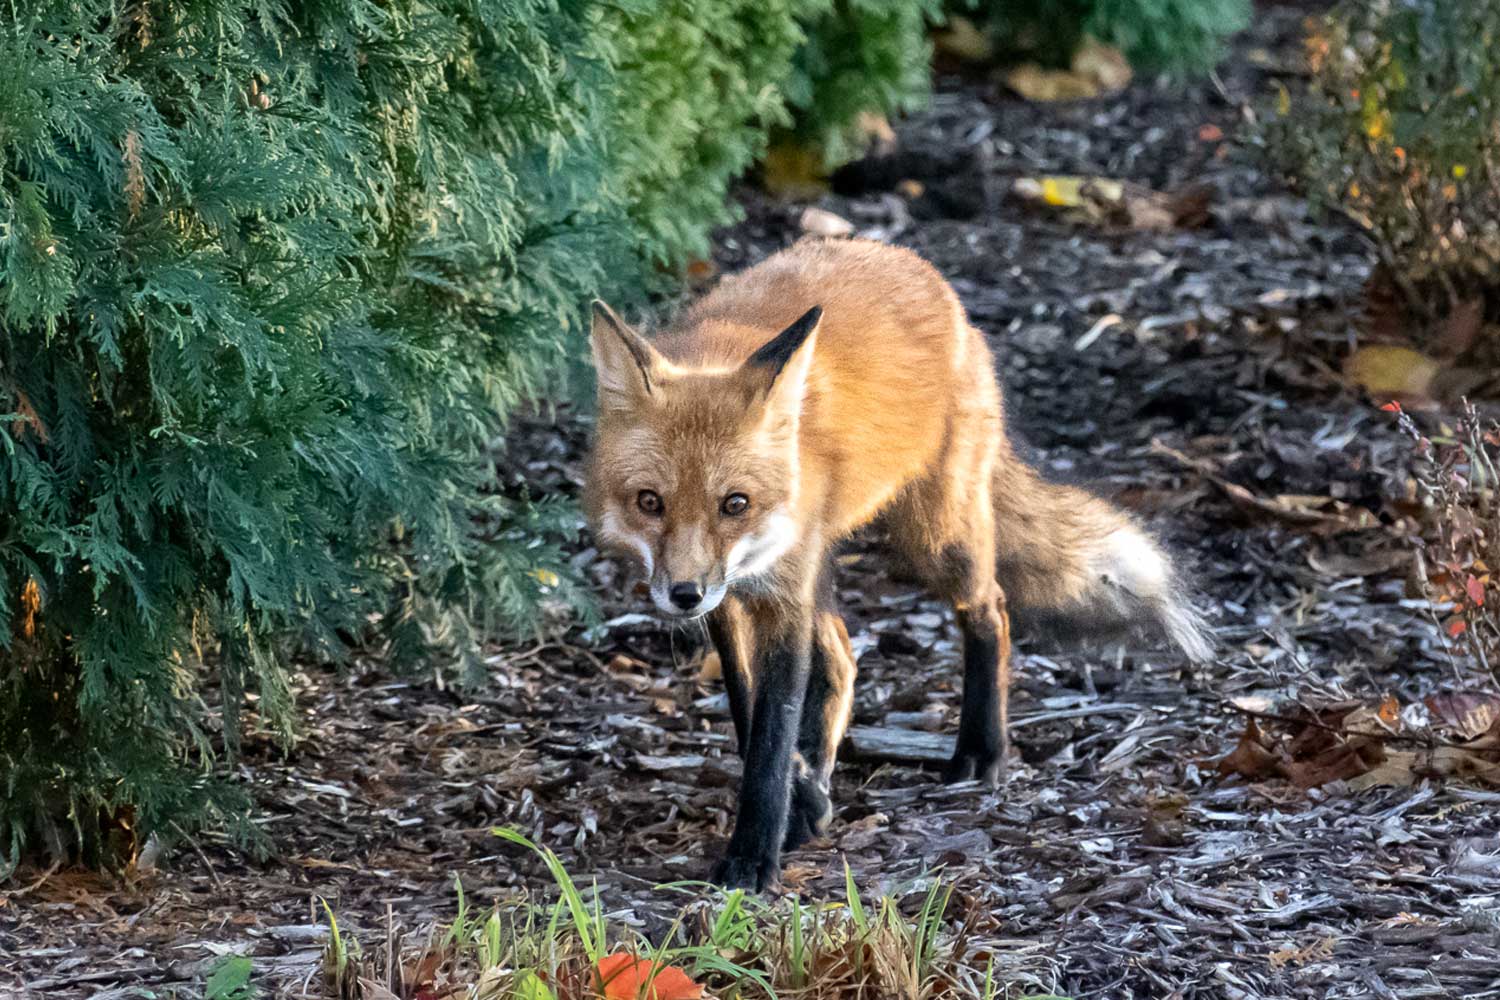 Red fox walking alongside shrubbery.